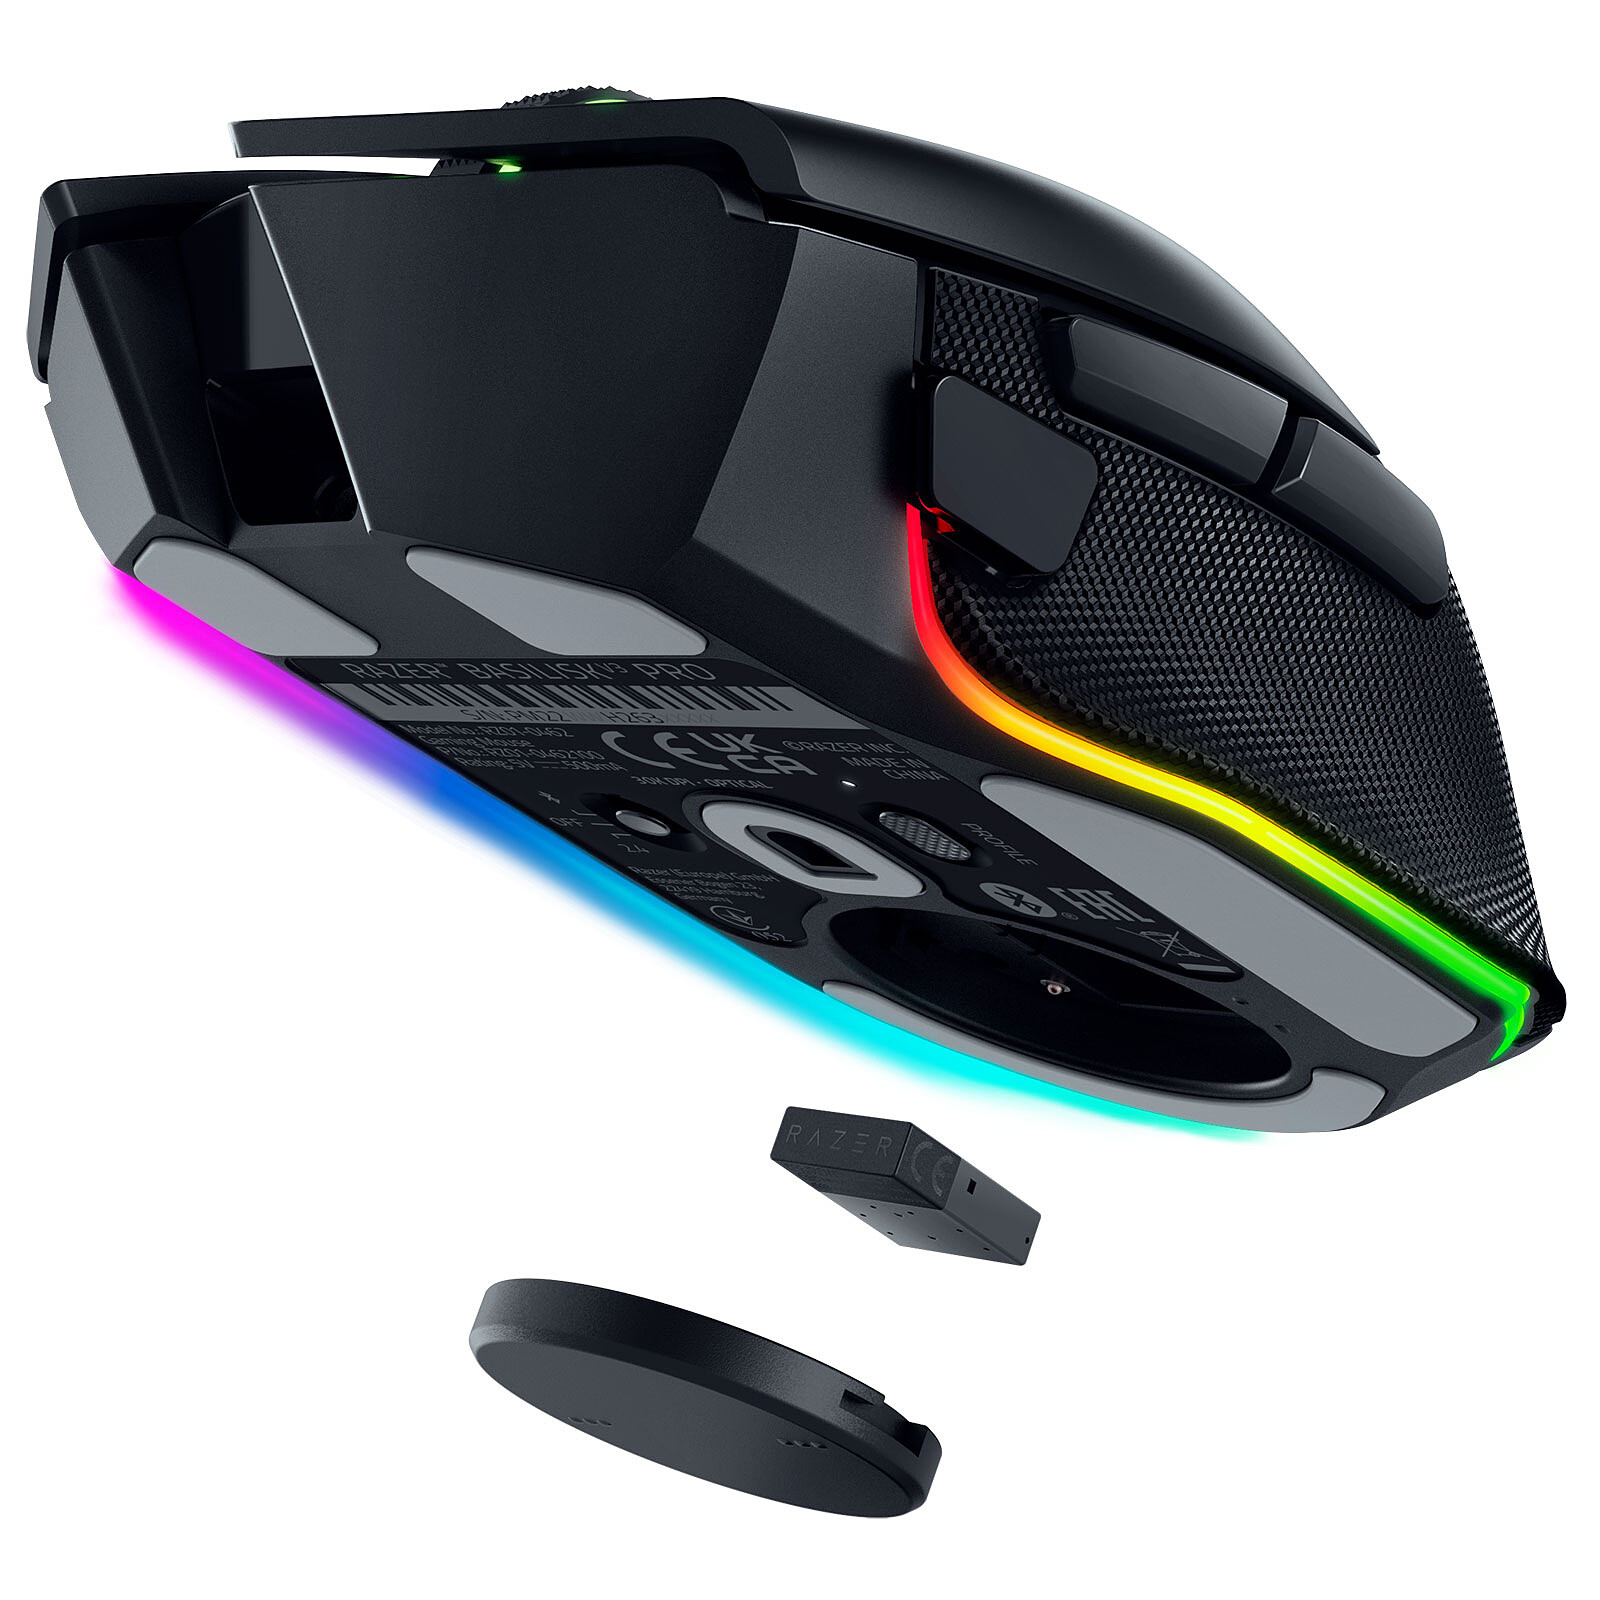 Seulement 49€ : c'est le prix à payer pour cette souris gamer RGB Razer ! 